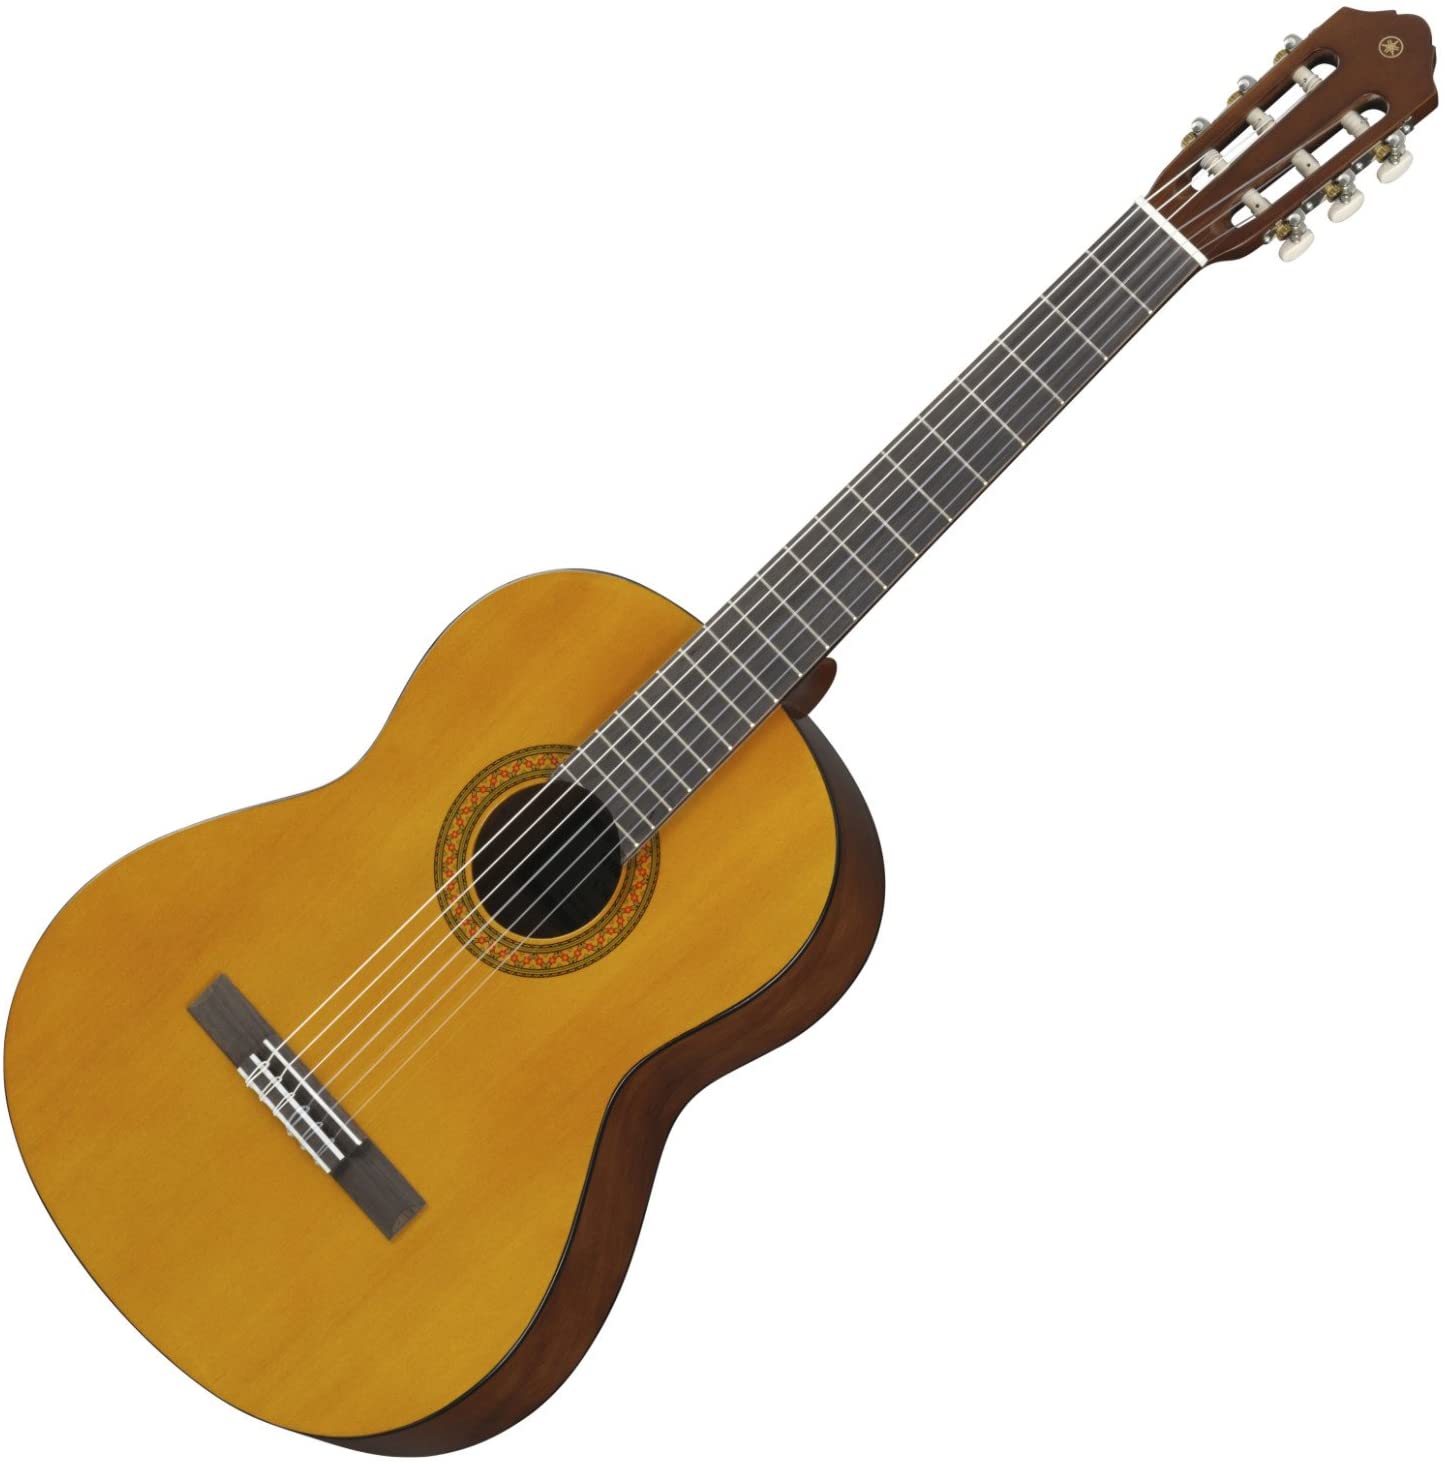 Đàn Guitar Classic YAMAHA C70 - Mặt đàn gỗ vân sam, mặt sườn và lưng đàn từ Tonewood,  bảo hành chính hãng 12 tháng